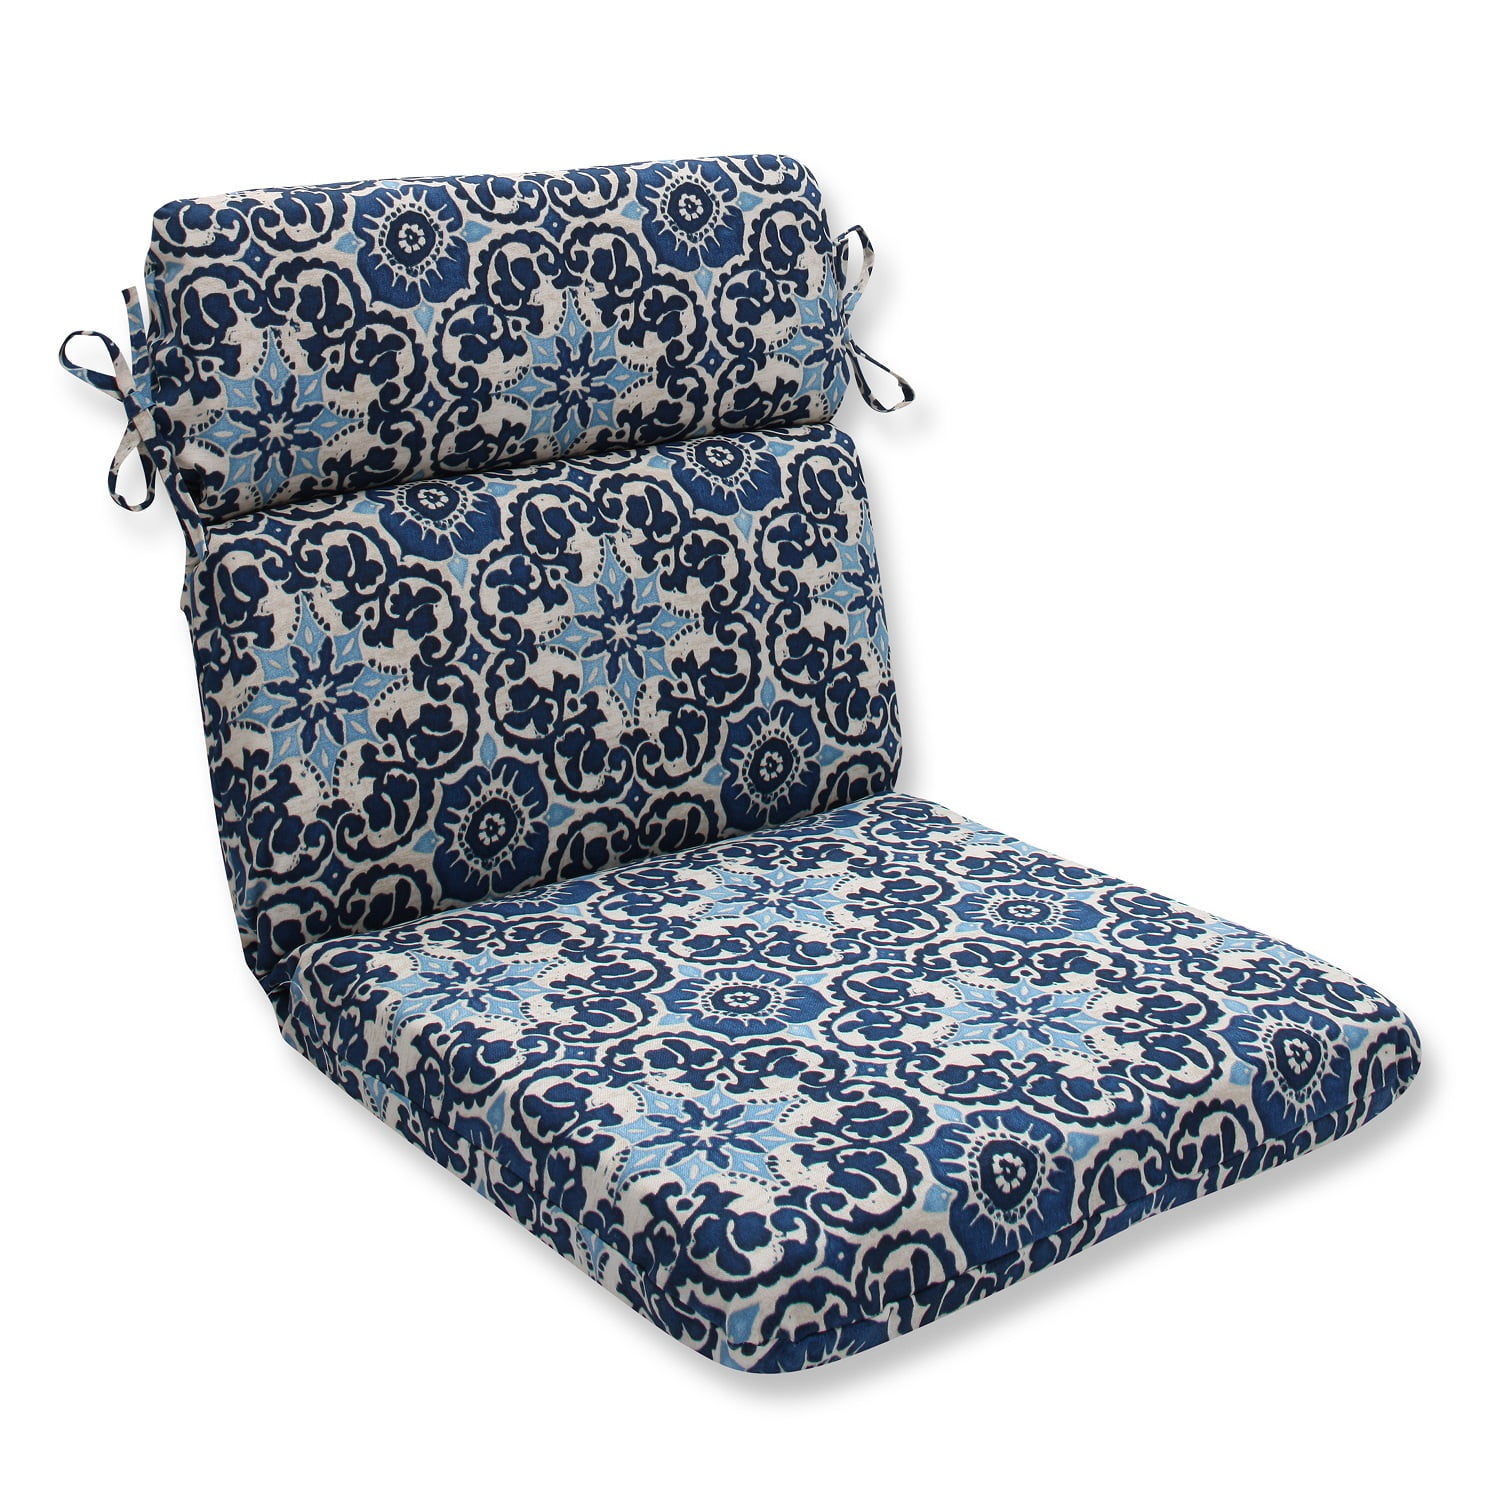 21” x 40.5” Ocean Flower Outdoor Patio Chair Cushions - Walmart.com